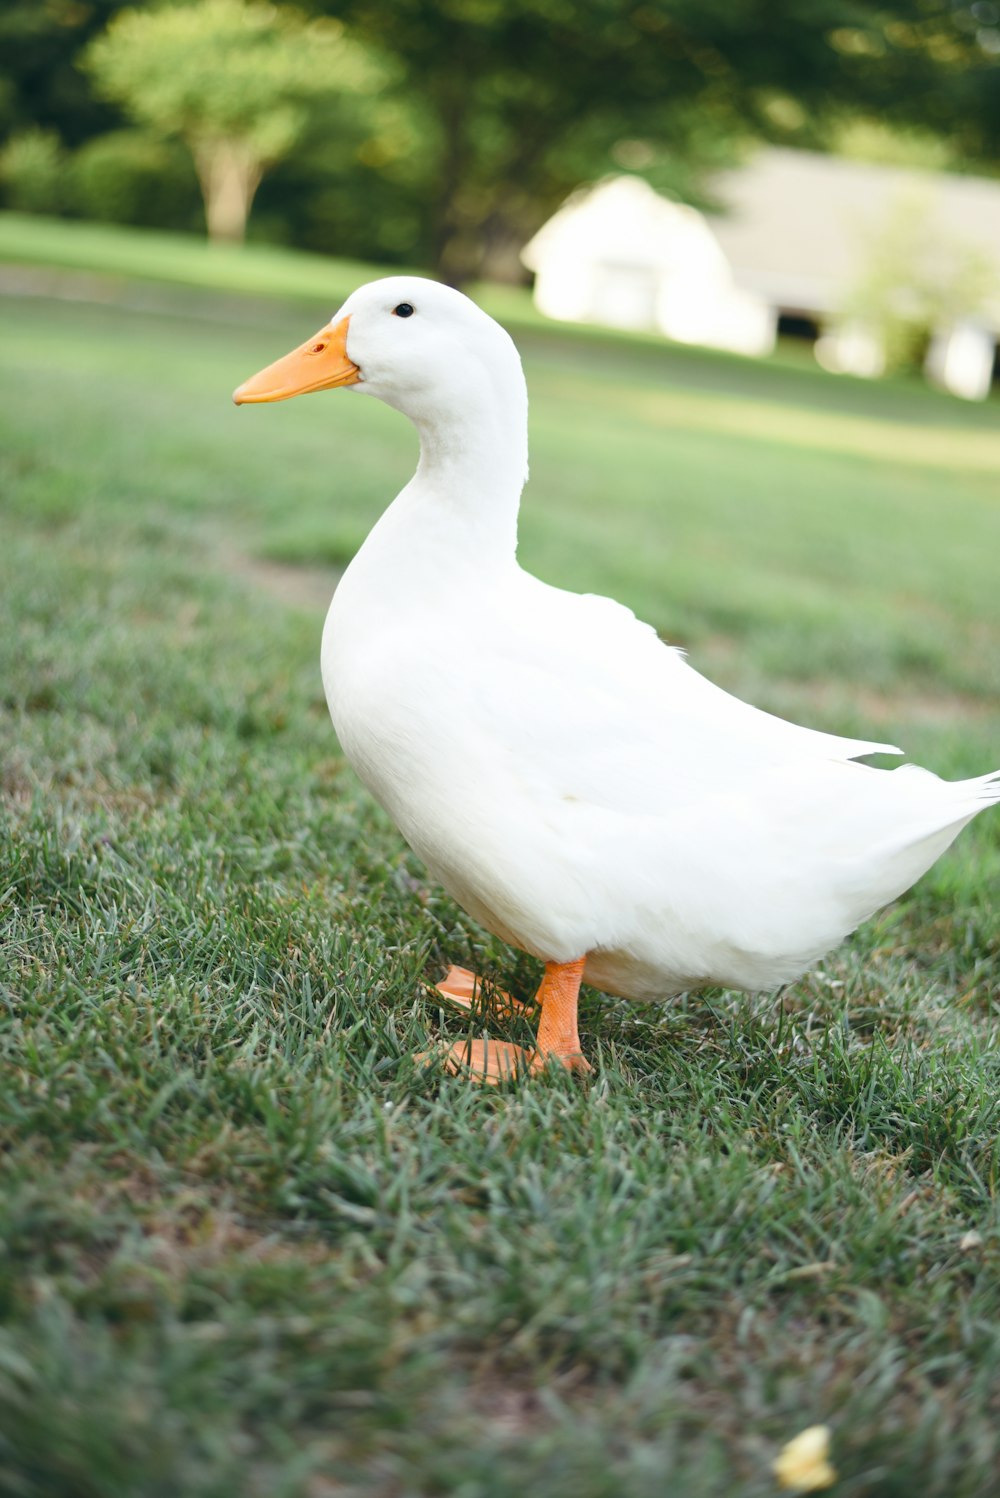 white duck on grass field